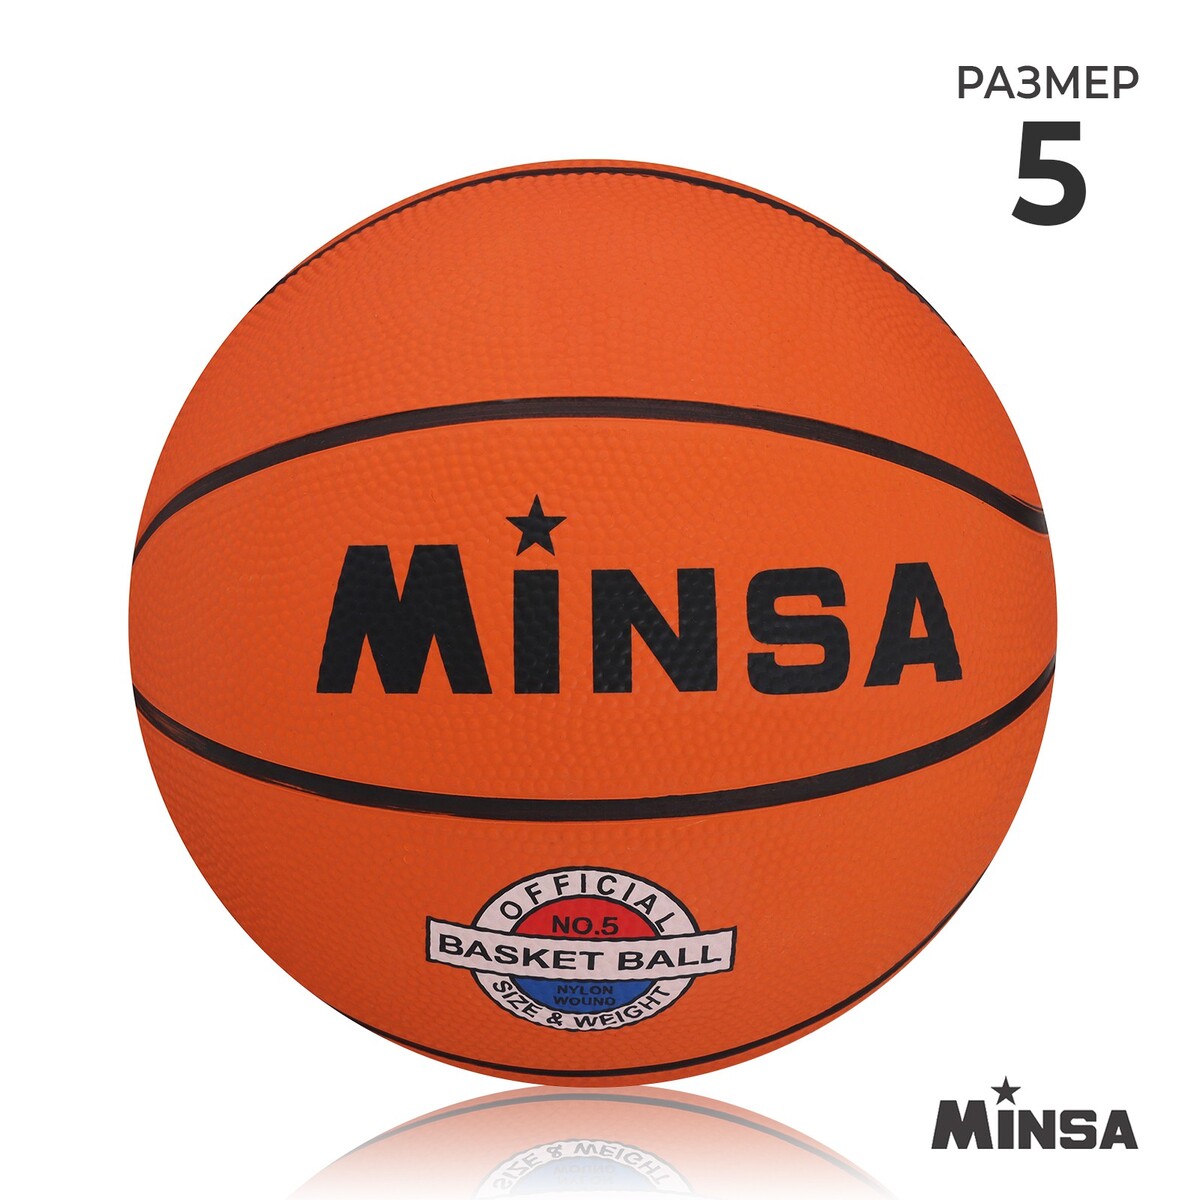 Мяч баскетбольный minsa sport, пвх, клееный, 8 панелей, р. 5 баскетбольный мяч minsa тренировочный pu клееный 8 панелей р 6